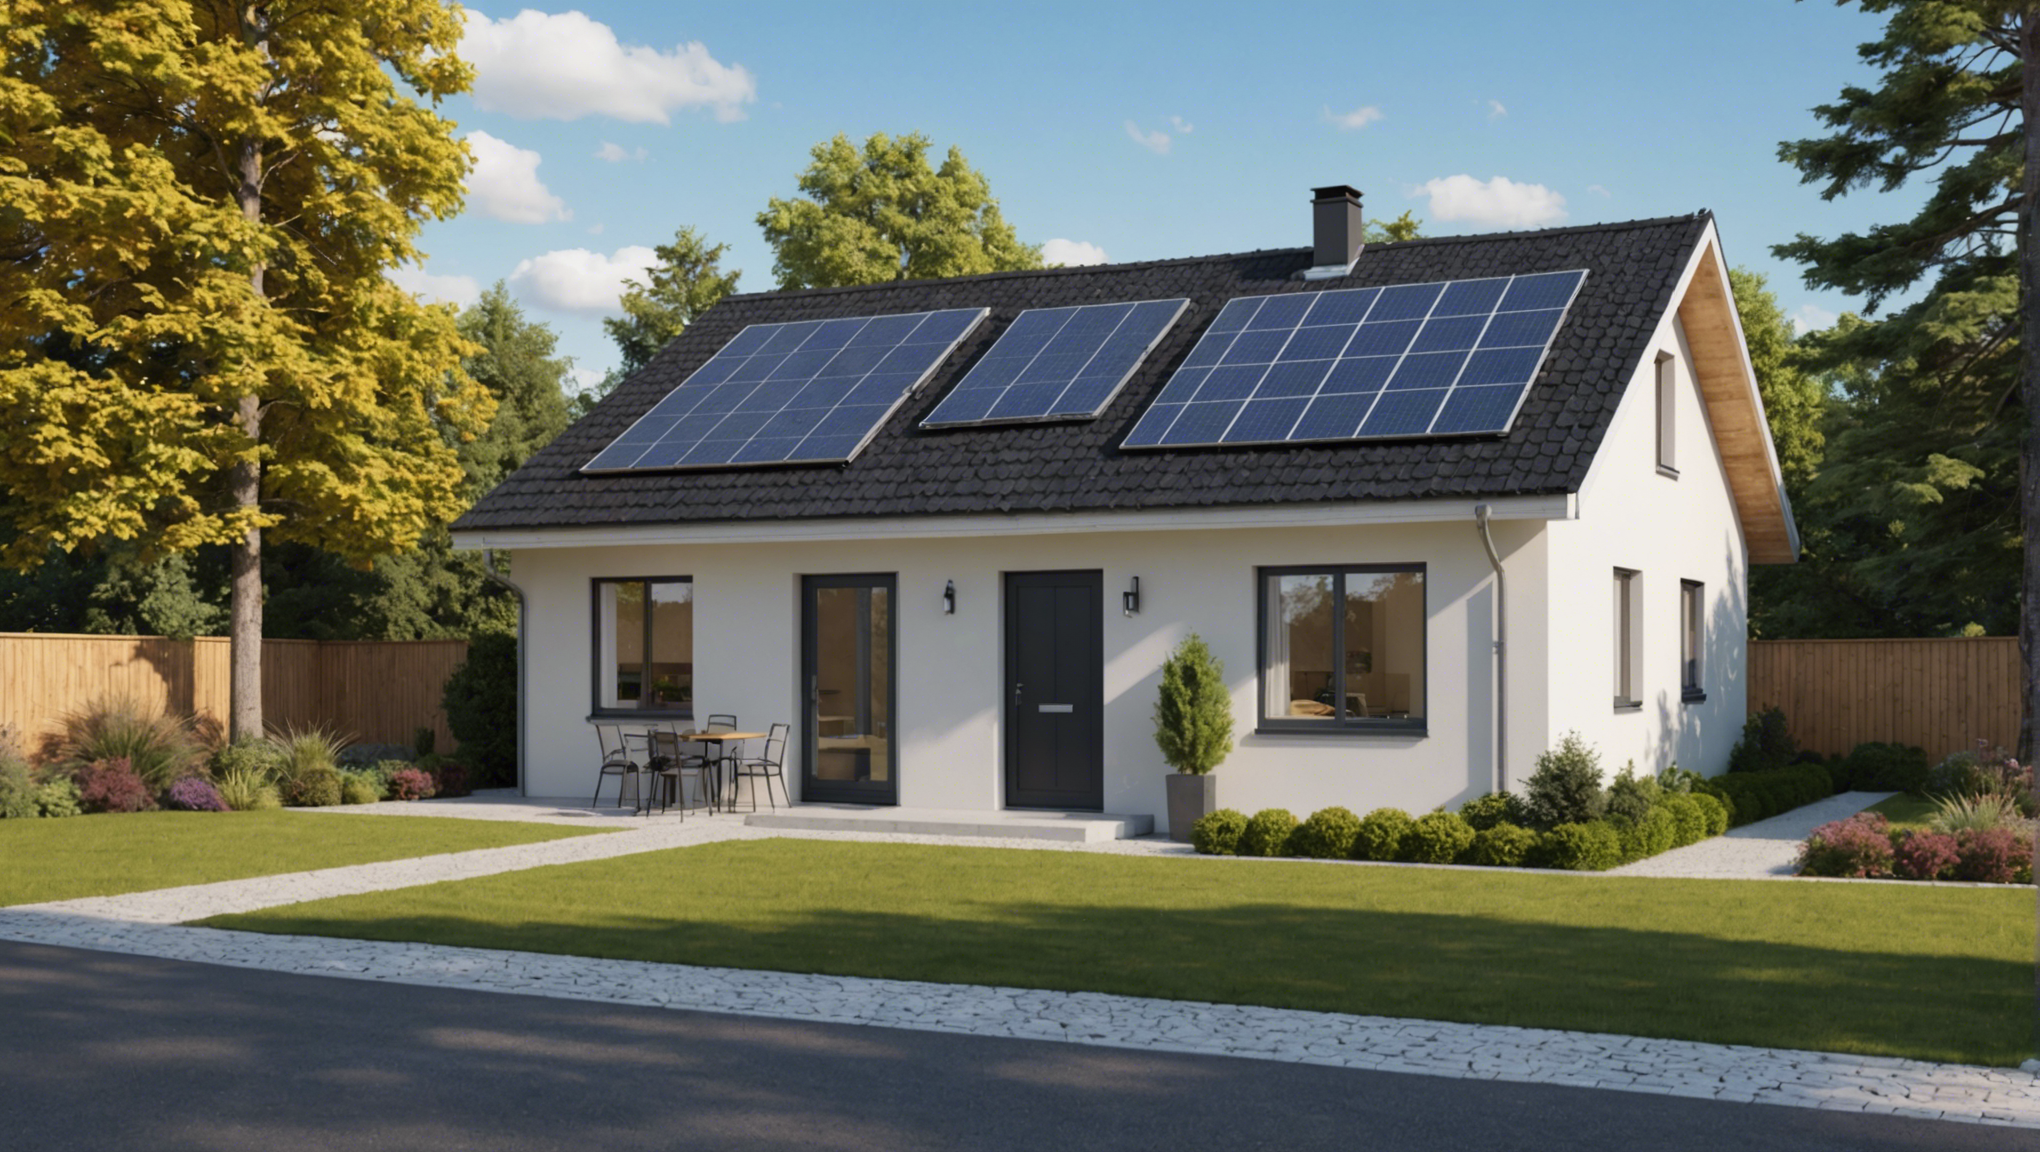 découvrez comment estimer le coût d'isolation thermique par l'extérieur d'une maison de 120m2 et les avantages de ce type de rénovation pour améliorer la performance énergétique de votre habitat.